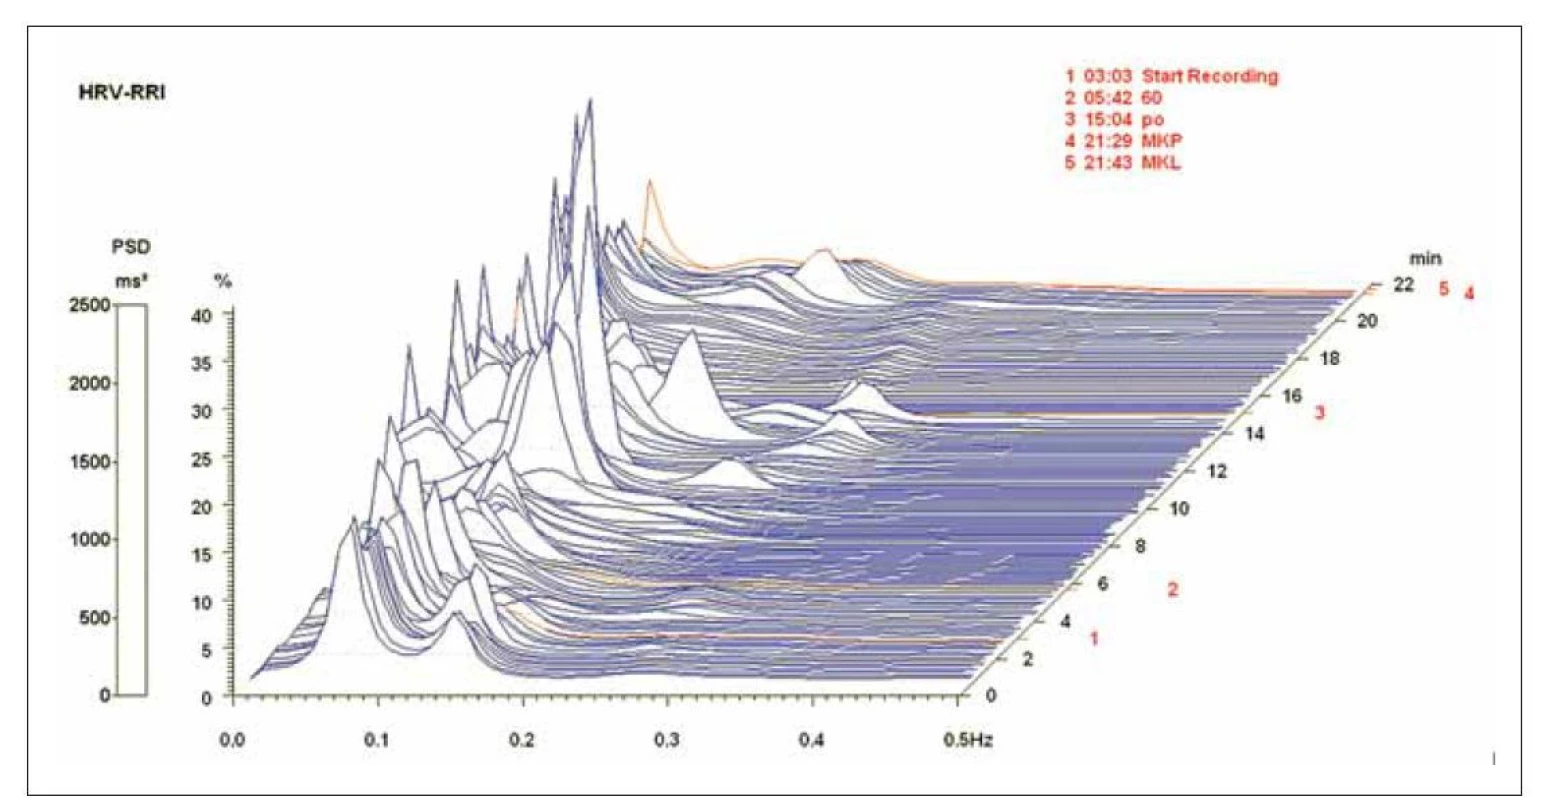 Spektrální analýza variability srdeční frekvence u osoby s kardioinhibiční reflexní bradykardickou synkopou v průběhu HUT,
Muž 32 let, bez farmakoterapie, posledních 35 sekund přes sklopením junkční rytmus<br>
Osa x frekvence, osa y PSD, osa z časový průběh HUT testu, komponenta HF (0,15–0,40 Hz), počáteční poloha vleže SUP1: HF RRI 404 ms2,
25 n.u., LF/HF 2,7, poslední 2 minuty HUT: HF RRI 142 ms2, 27,5 n.u., LF/HF 2,3, závěrečná poloha vleže SUP2: HF RRI 13 376 ms2, 32 n.u.,
LF/HF 0,9. Úsek 2 na časové ose představuje dobu náklonu (minuty 5–15).<br>
HF – vysokofrekvenční komponenta; RRI – RR-Interval je časový interval [ms] mezi dvěma kmity R na EKG; HUT – head-up tilt test; LF – nízkofrekvenční
komponenta; PSD – výkonová spektrální hustota; SUP1 – úvodní supinační poloha; SUP2 – závěrečná supinační poloha<br>
Fig. 3. Spectral analysis of heart rate variability in person with cardioinhibitory reflex bradycardic syncope during HUT; man aged
32 years, without therapy, junctional rhythm for 35 second before end of tilting.<br>
x-axis frequency, y-axis power spectral density, z-axis time course of HUT. HF component (0.15–0.40 Hz), initial supine position SUP1: HF RRI
404 ms2, 25 n.u., LF/HF 2.7, last 2 minutes of tilting: HF RRI 142 ms2, 27.5 n.u., LF/HF 2.3, final supine position SUP2: HF RRI 13,376 ms2,32 n.u.,
LF/HF 0.9. Section 2 in time axis represents tilt time (minutes 5–15).<br>
HF – high frequency component; RRI – RR-Interval describes the time interval [ms] between two R-peaks in the ECG; HUT – head-up tilt test;
LF – low frequency component; PSD – power spectral density; SUP1 – initial supine position; SUP2 – final supine position